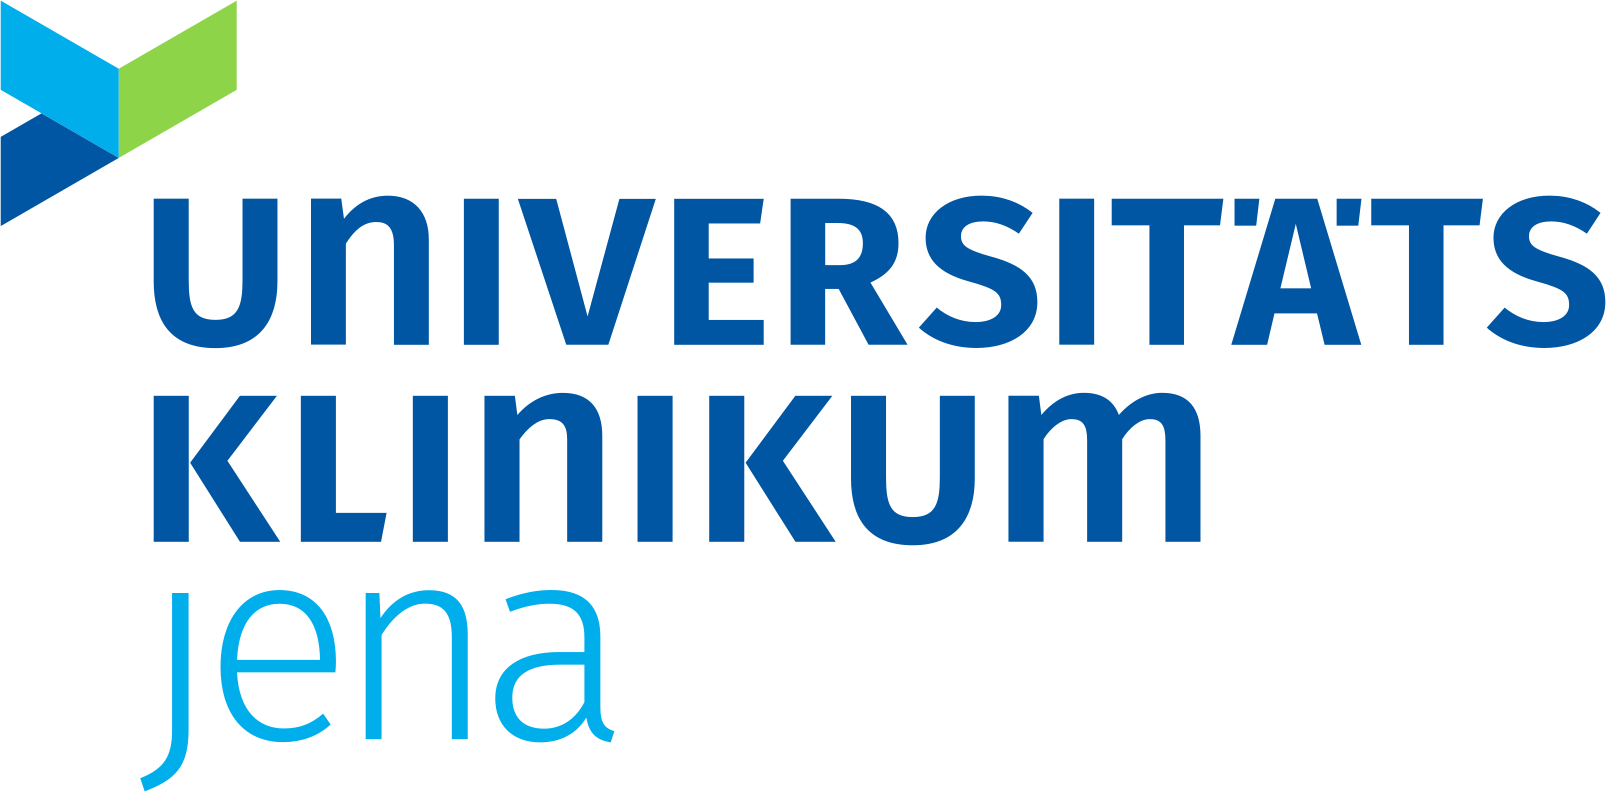 Jena Logo